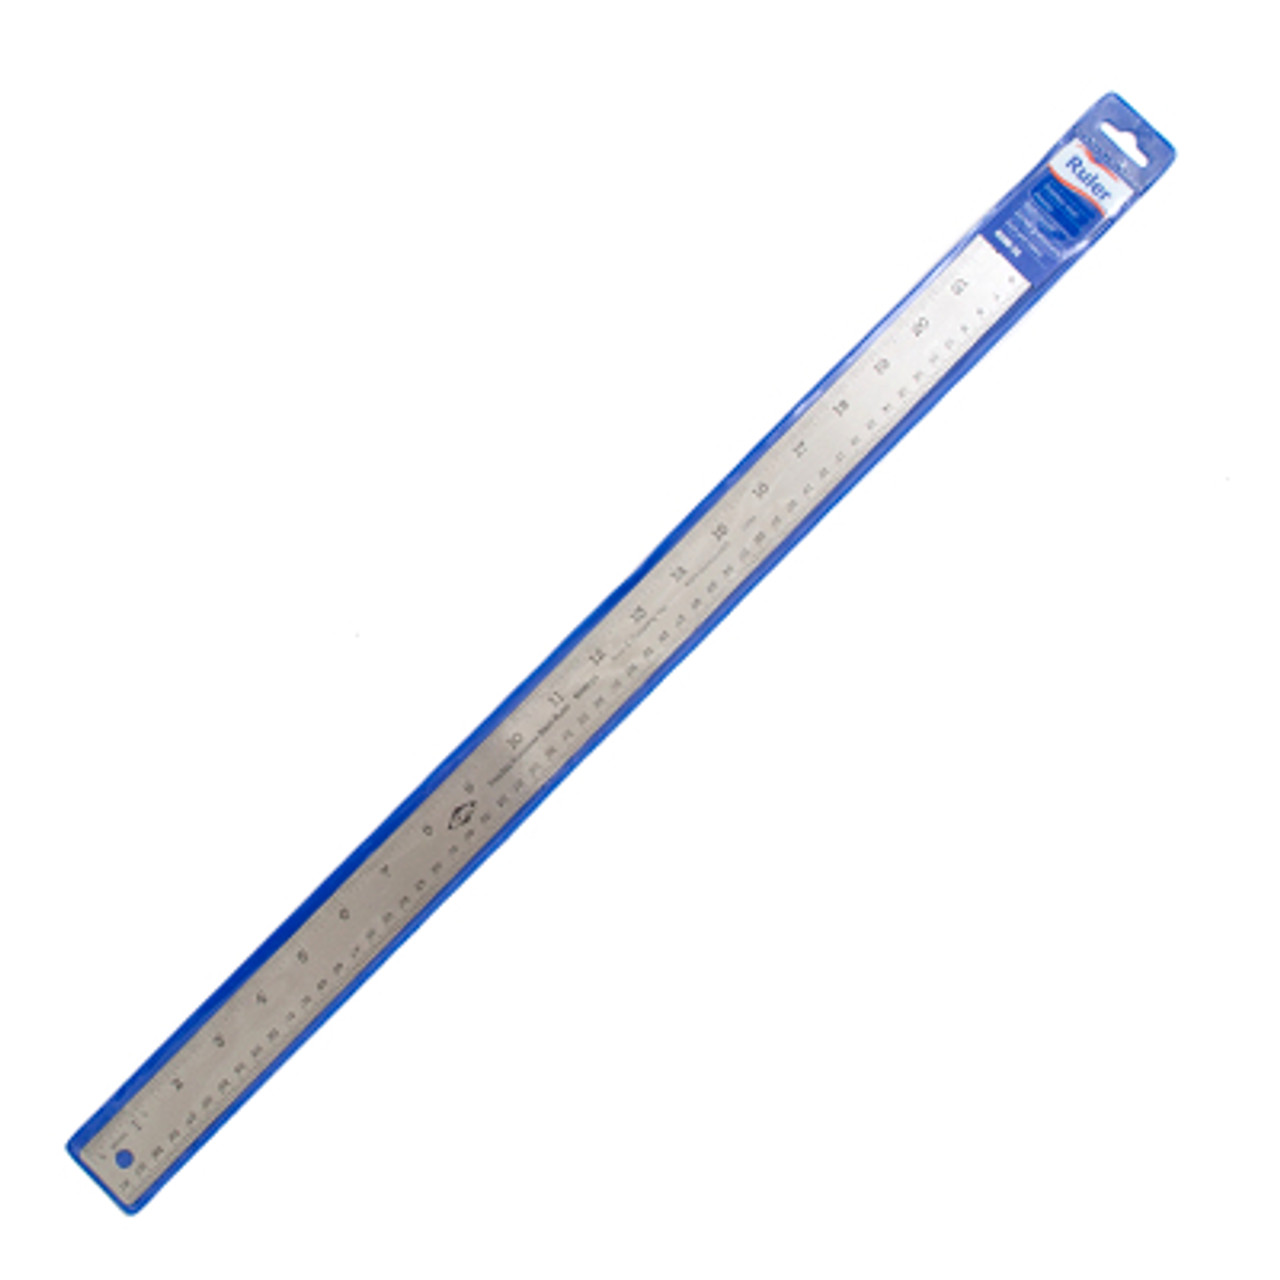 Metal Ruler 12 Inch - Stainless Steel Cork Back Metal Ruler